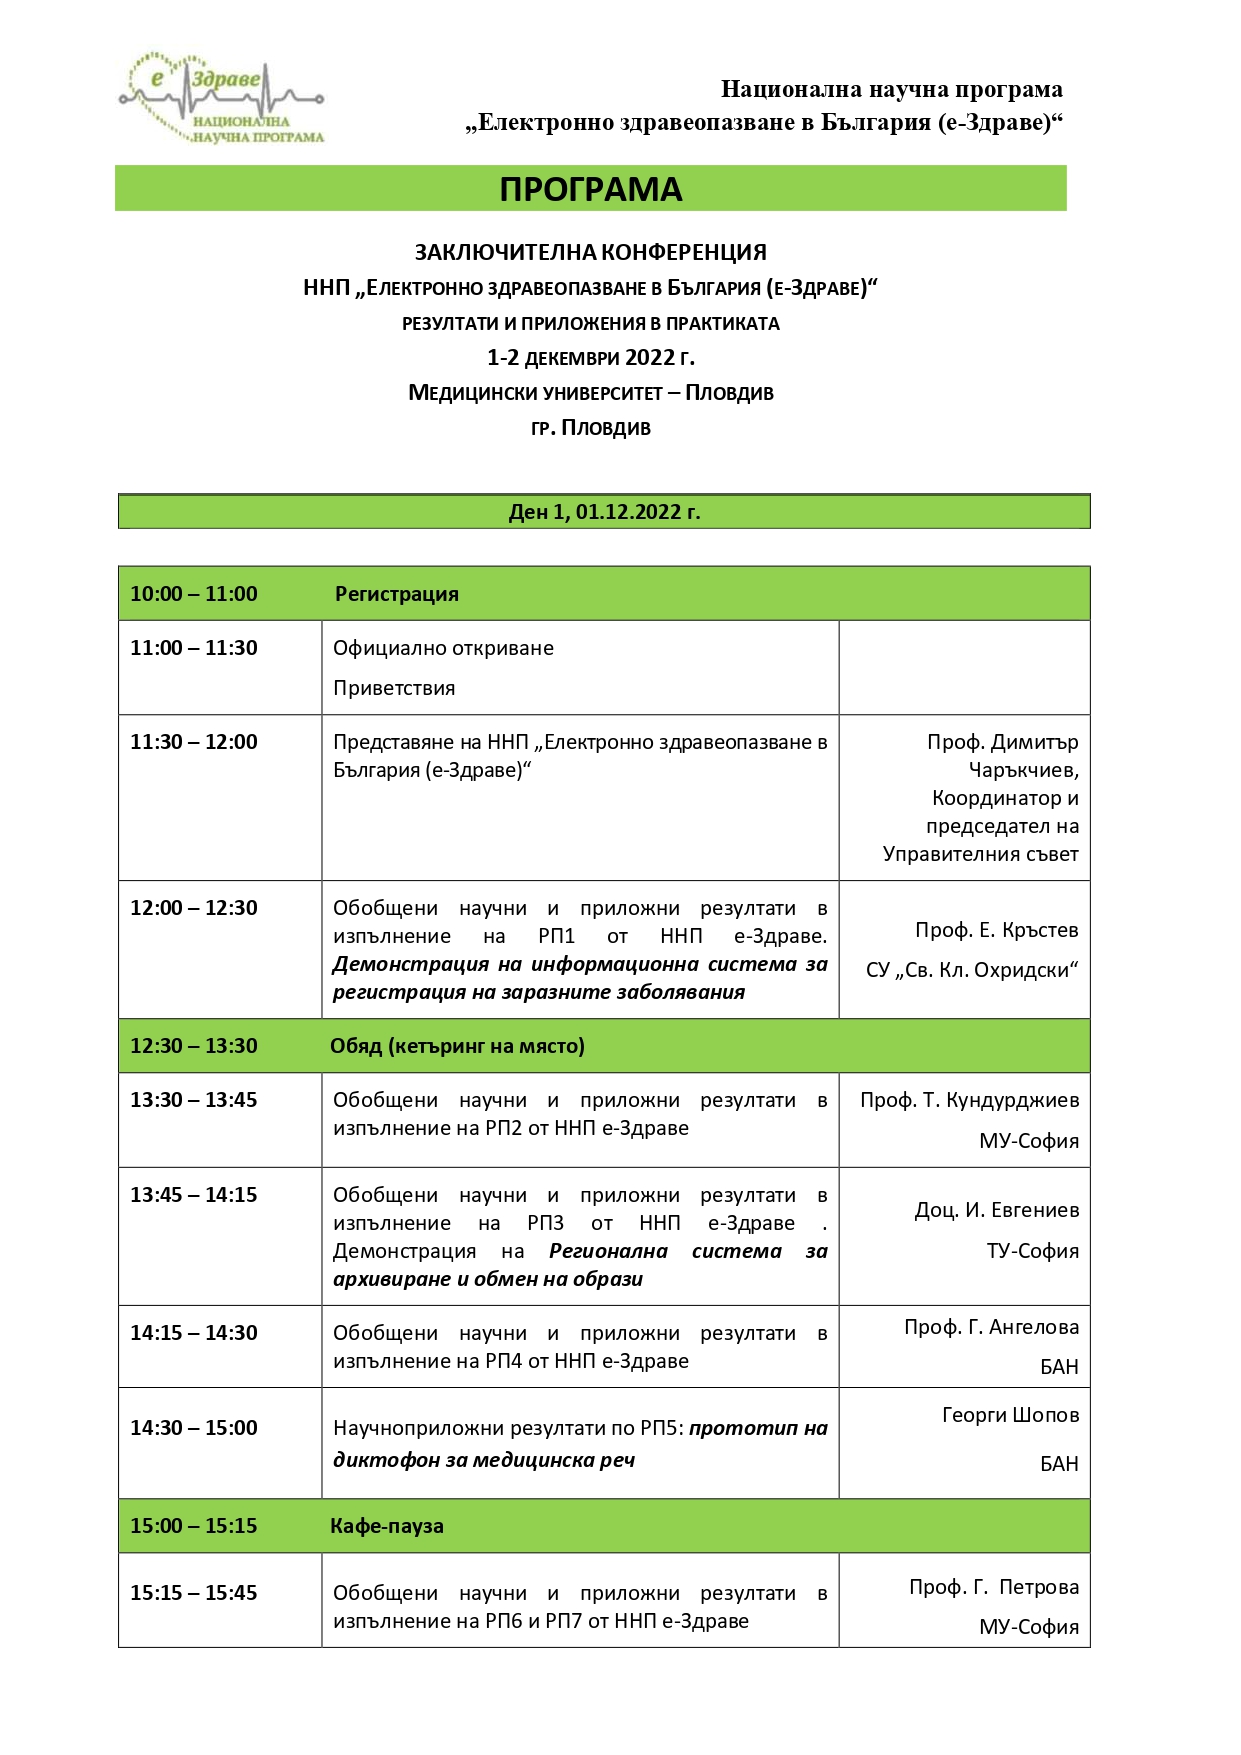 Заключителна конференция ННП "Електронно здравеопазване в България (е-Здраве)" - програма